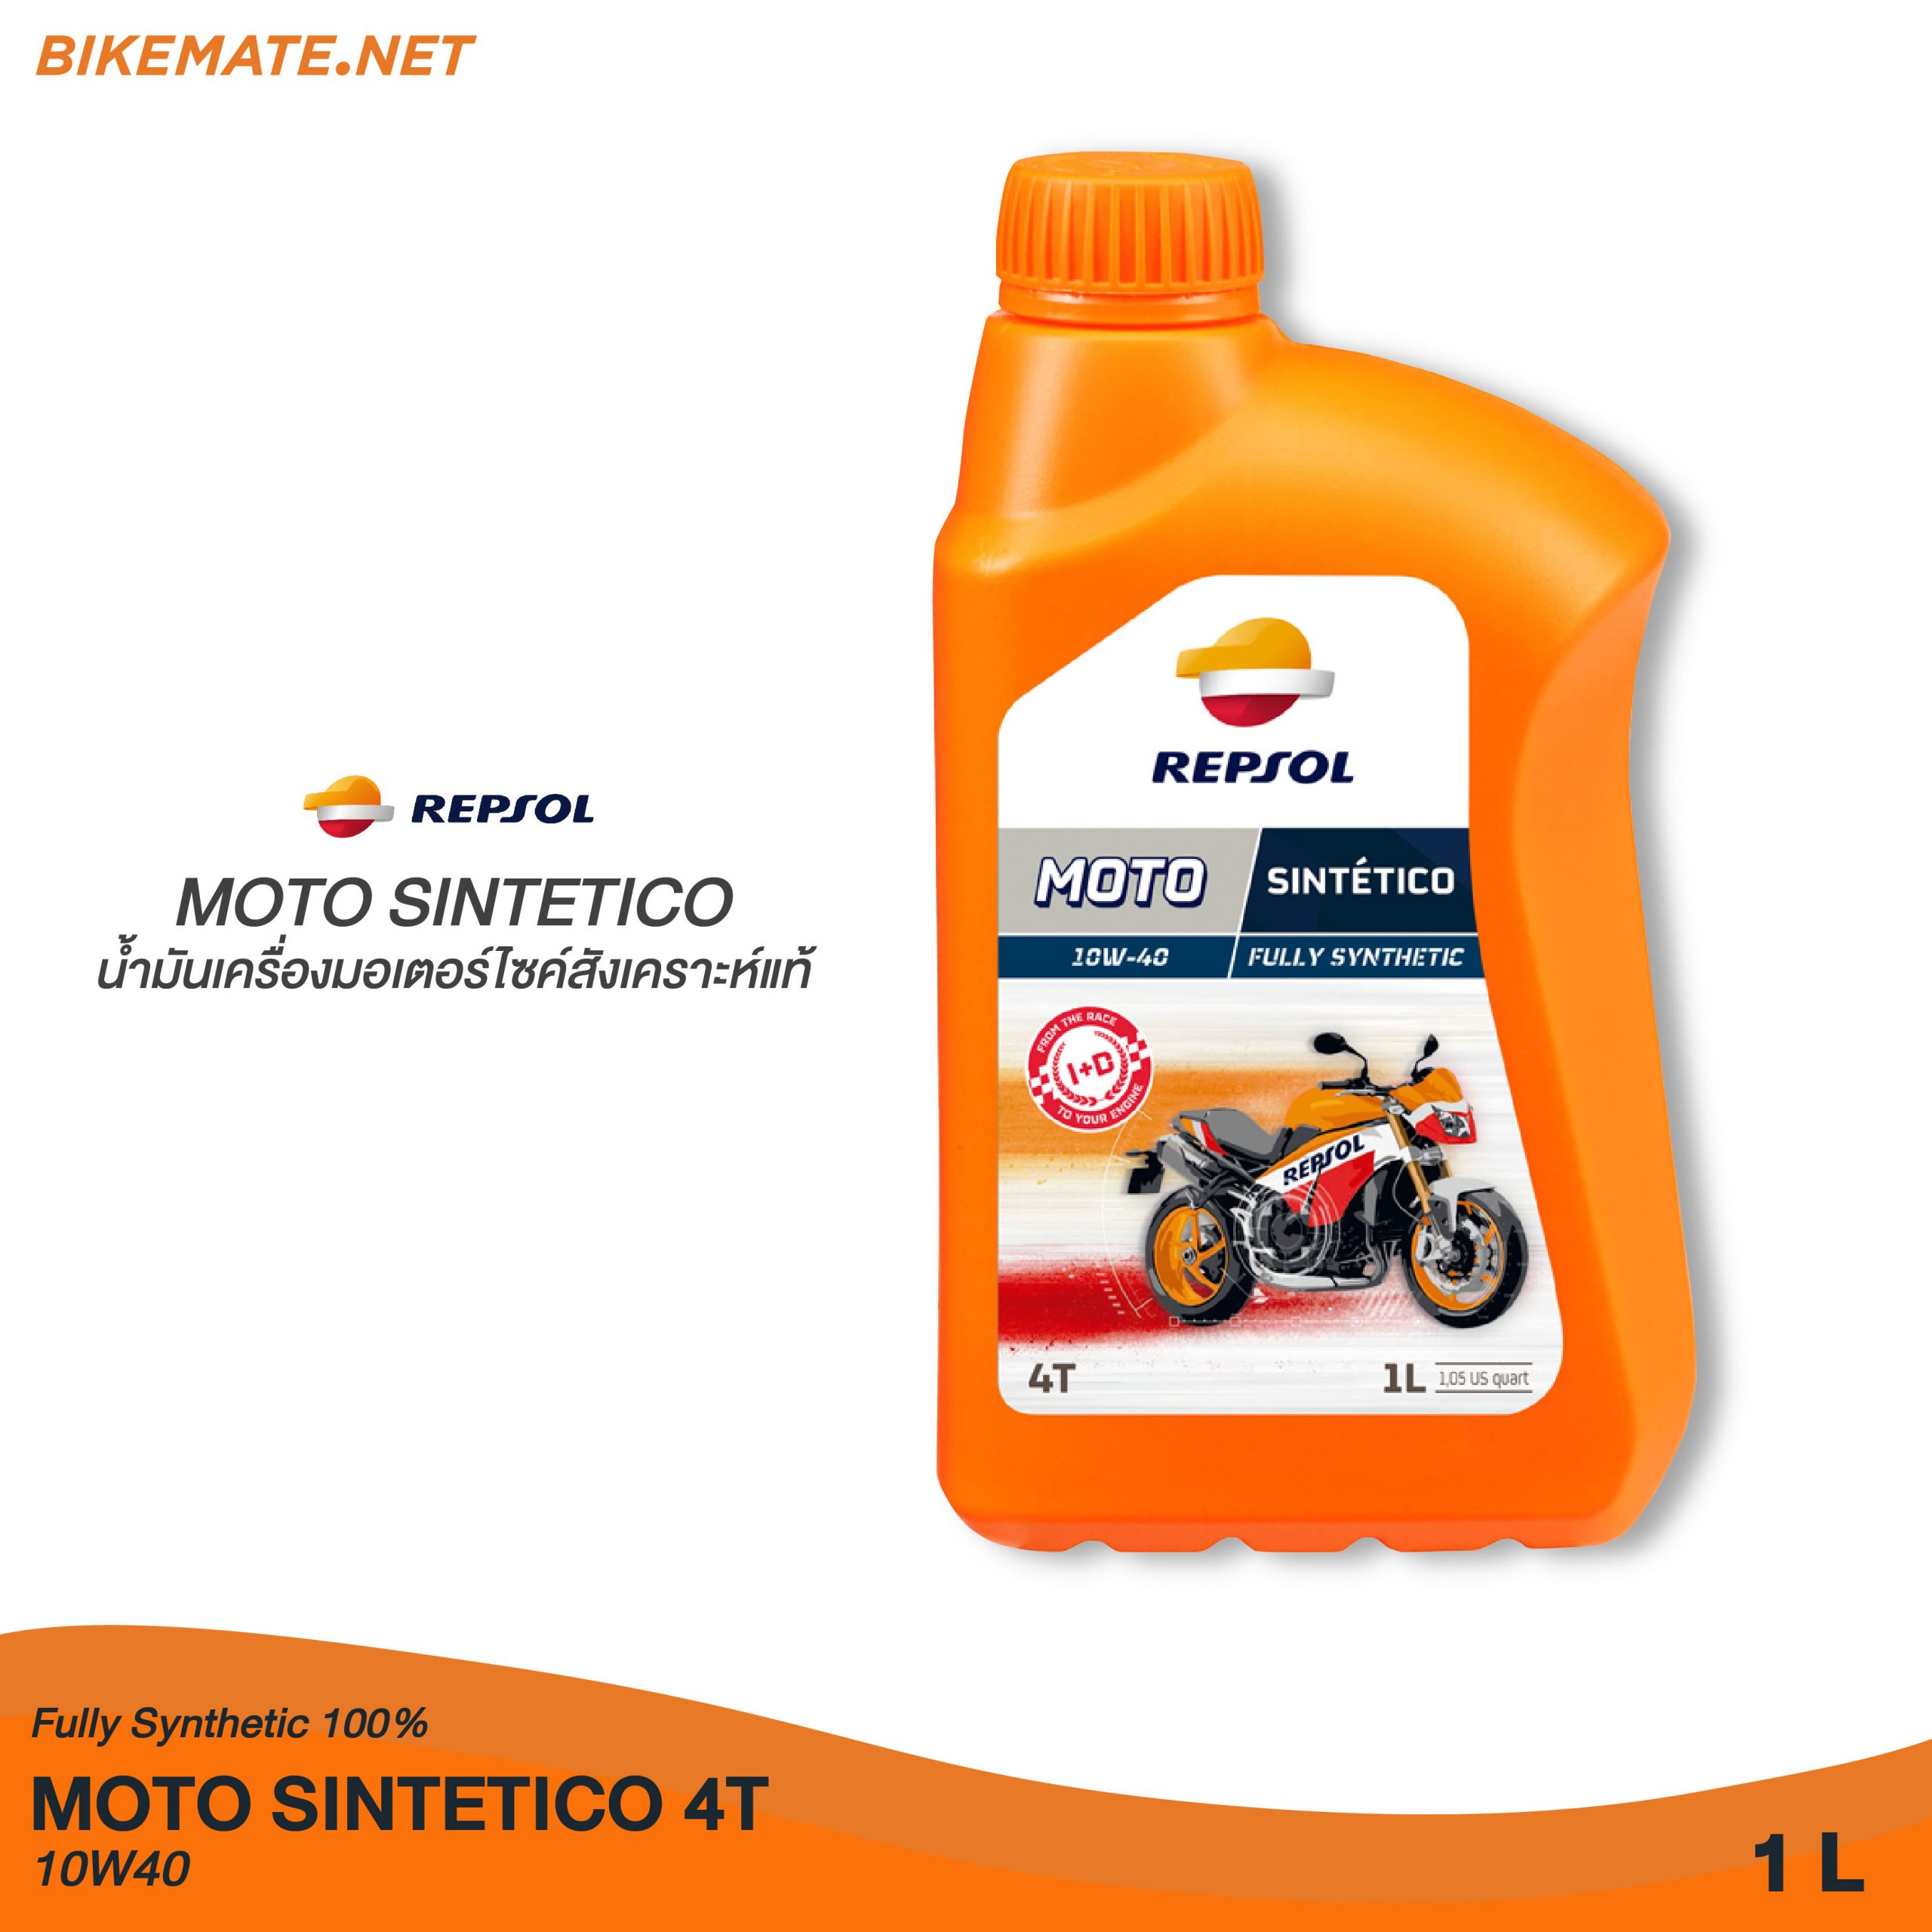 Repsol Moto Sentetico 10W40